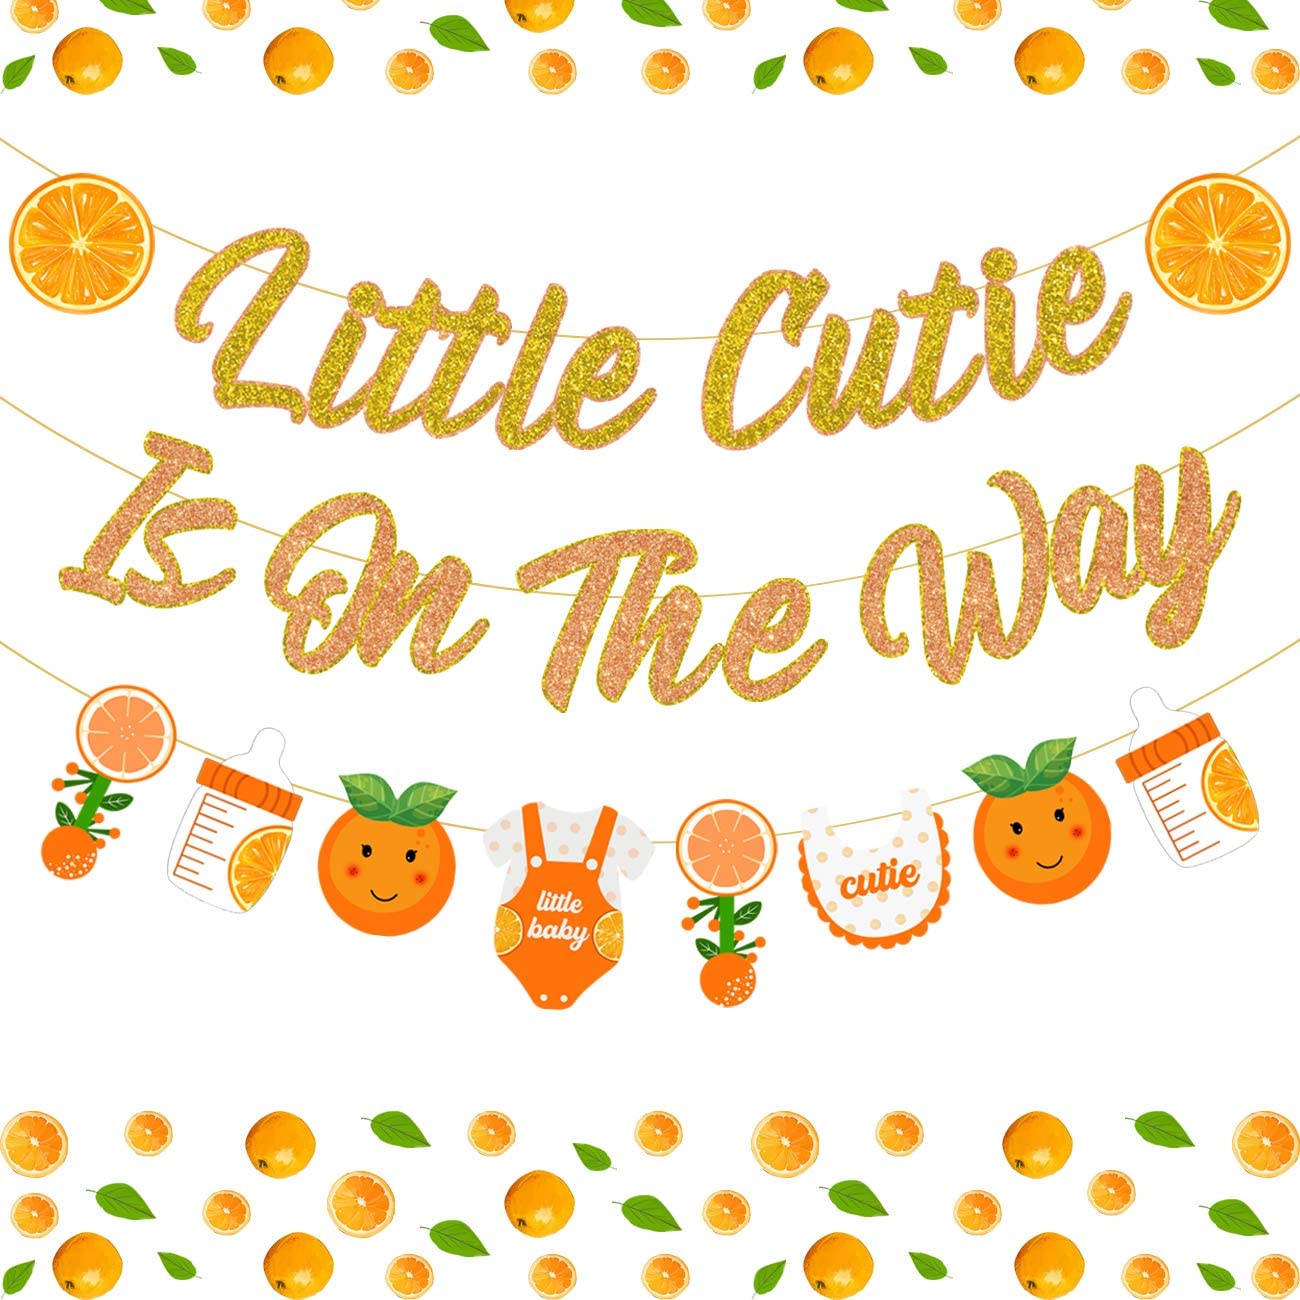 Little Cutie Is Op De Weg Banner Voor Citrus Baby Shower Decoraties, tangerine Garland Voor Oranje Fruit Thema Feestartikelen